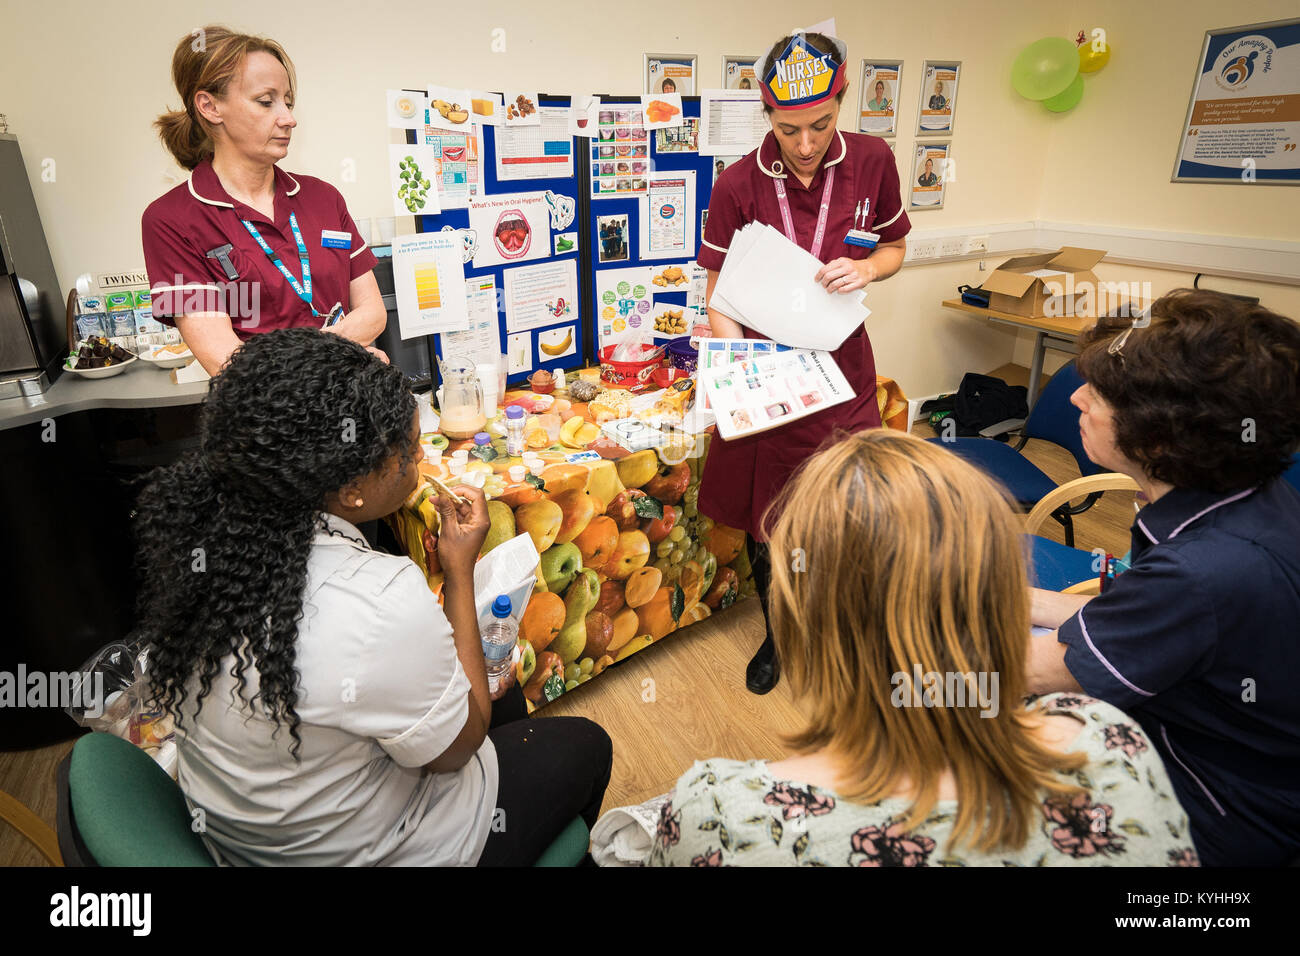 Die Princess Alexandra Hospital, Harlow, Krankenpflege und Geburtshilfe Feier Tag - Schulung und Information, UK. Mundhygiene Informationen Stockfoto